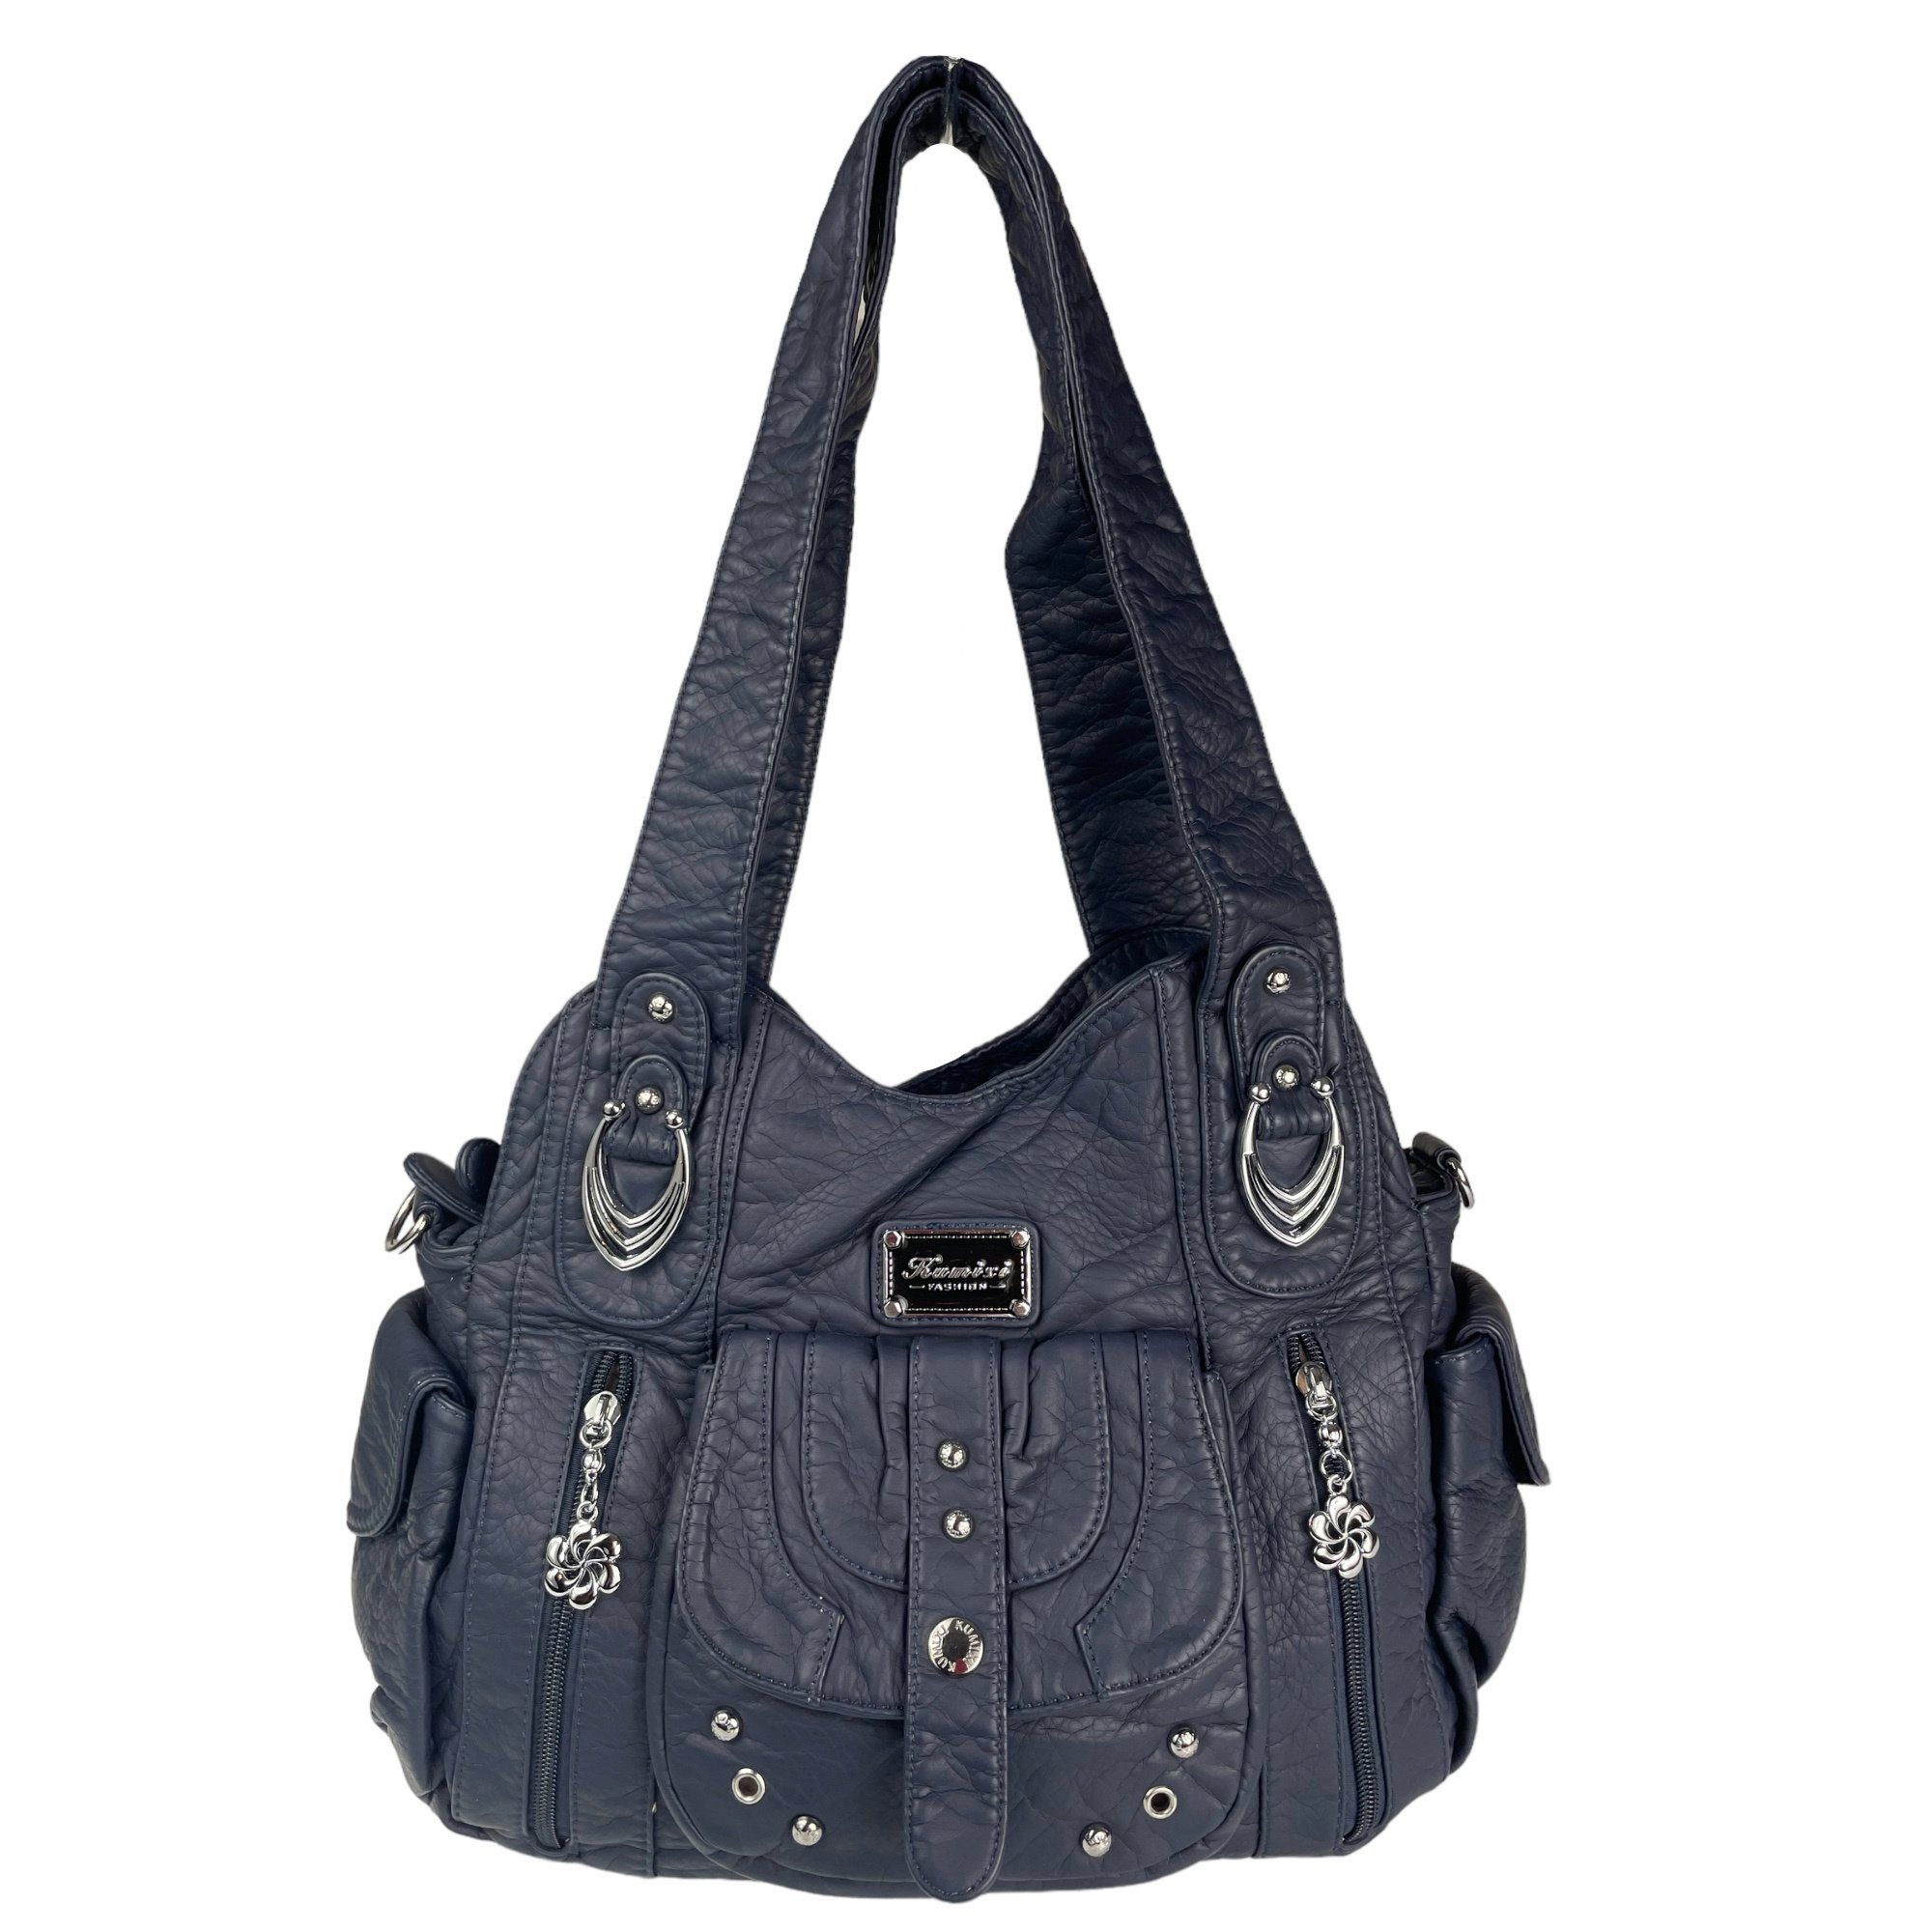 Taschen4life Schultertasche AKW22026, dunkelblau abnehmbarer Handtasche lange Schultertasche Schulterriemen, Damen & Tragegriffe